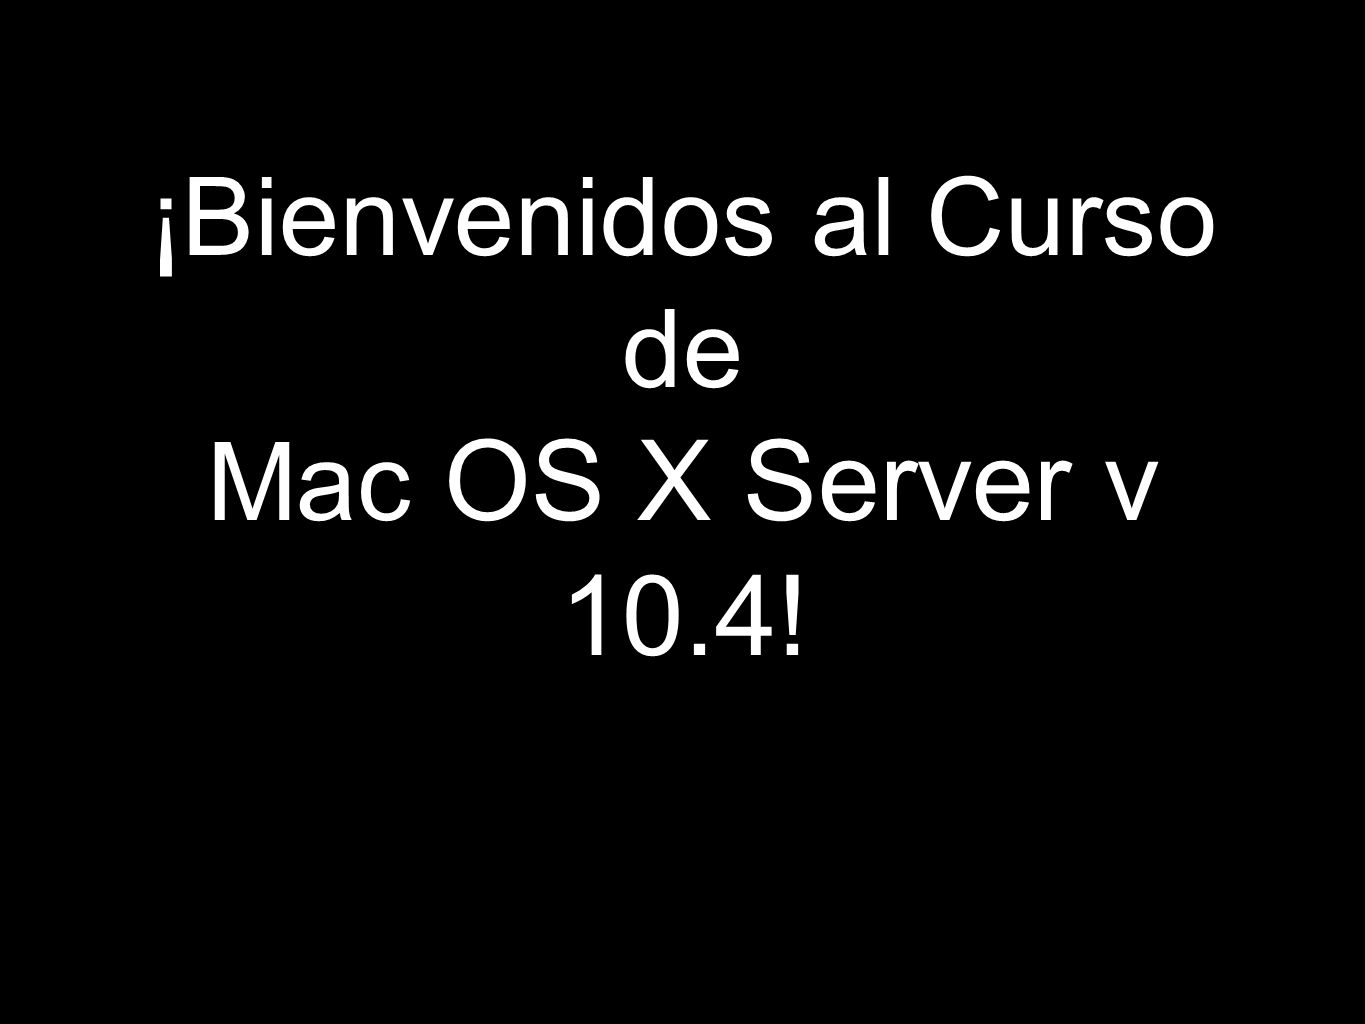 ¡Bienvenidos al Curso de Mac OS X Server v 10.4!